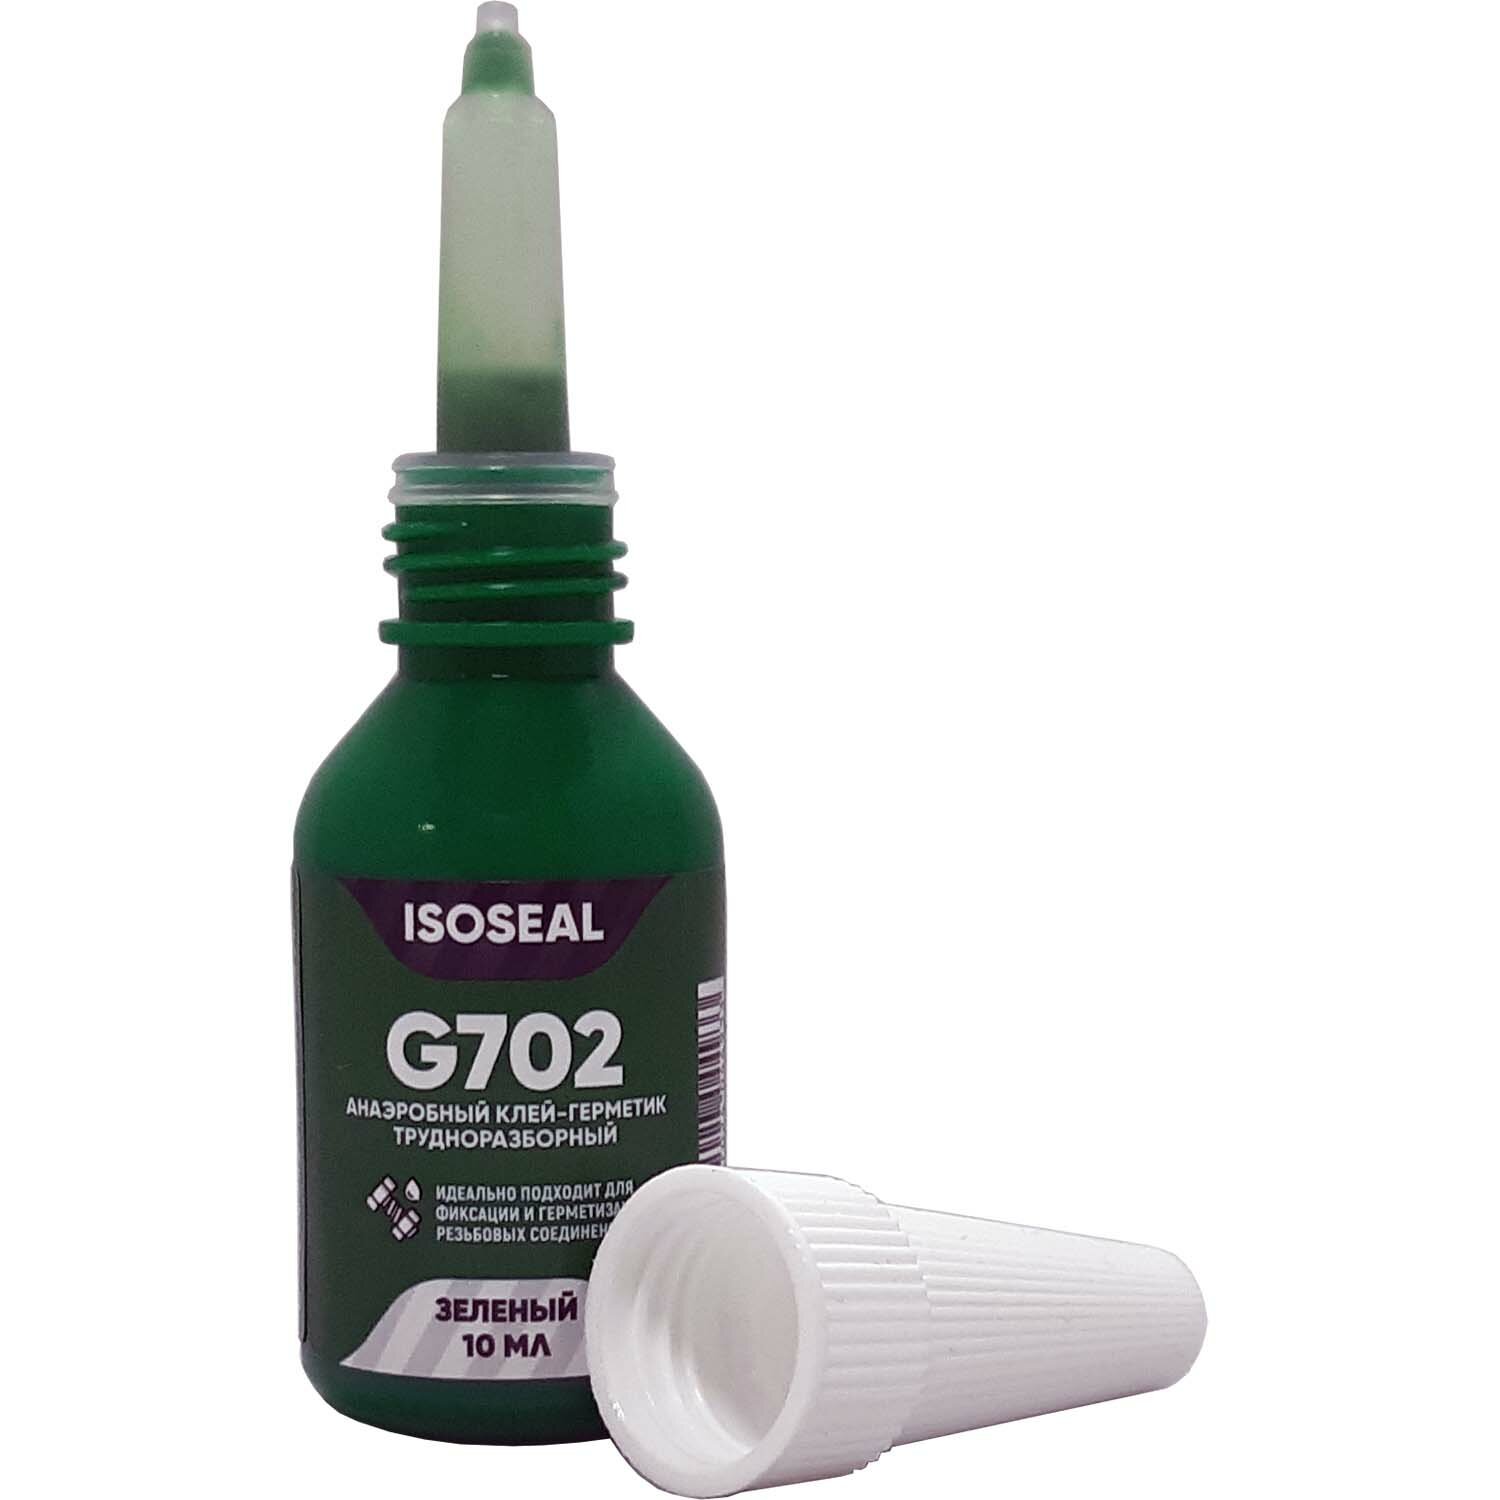 Анаэробный трудноразборный клей-герметик для резьбовых соединений ISOSEAL G702 зеленый 10 мл